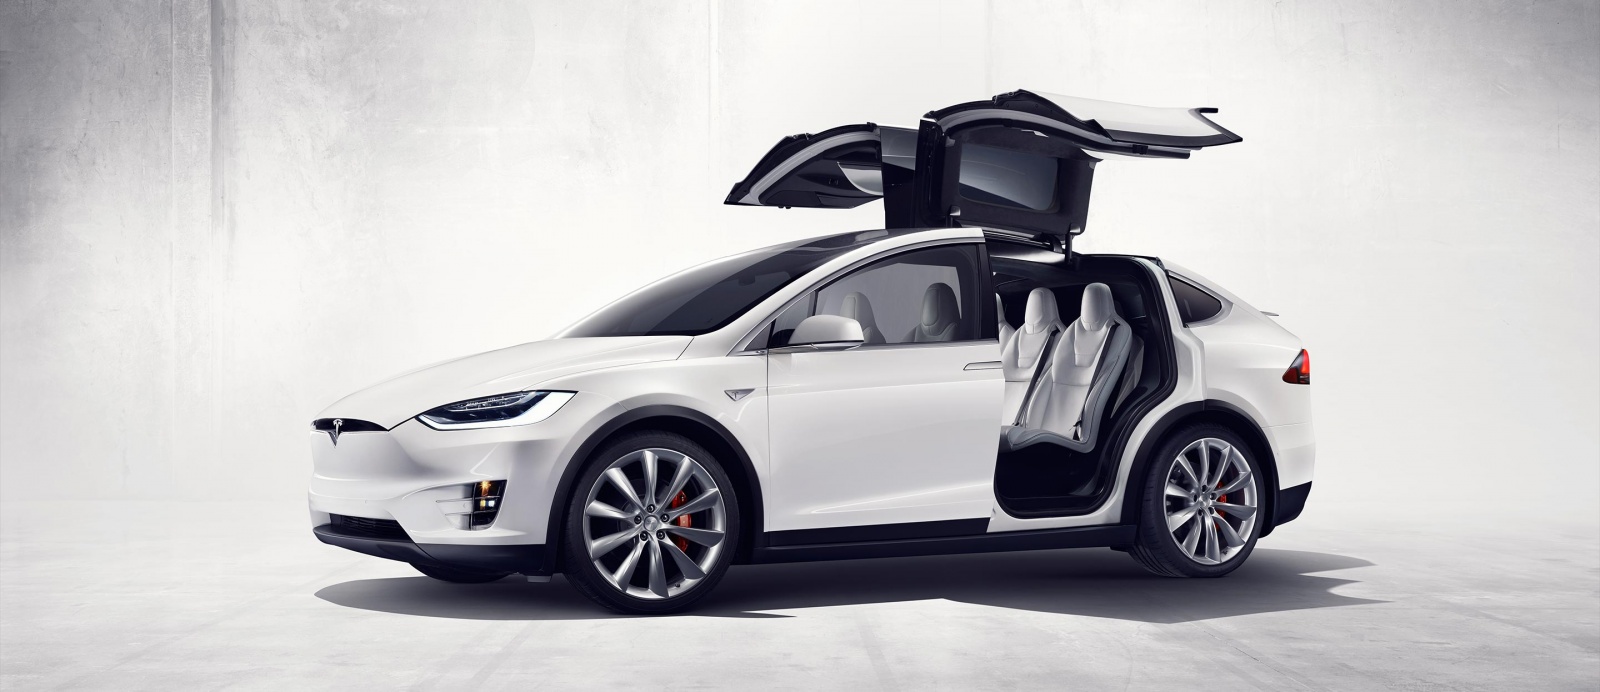 Начато производство Tesla Model X. Цена от $80000 - 1